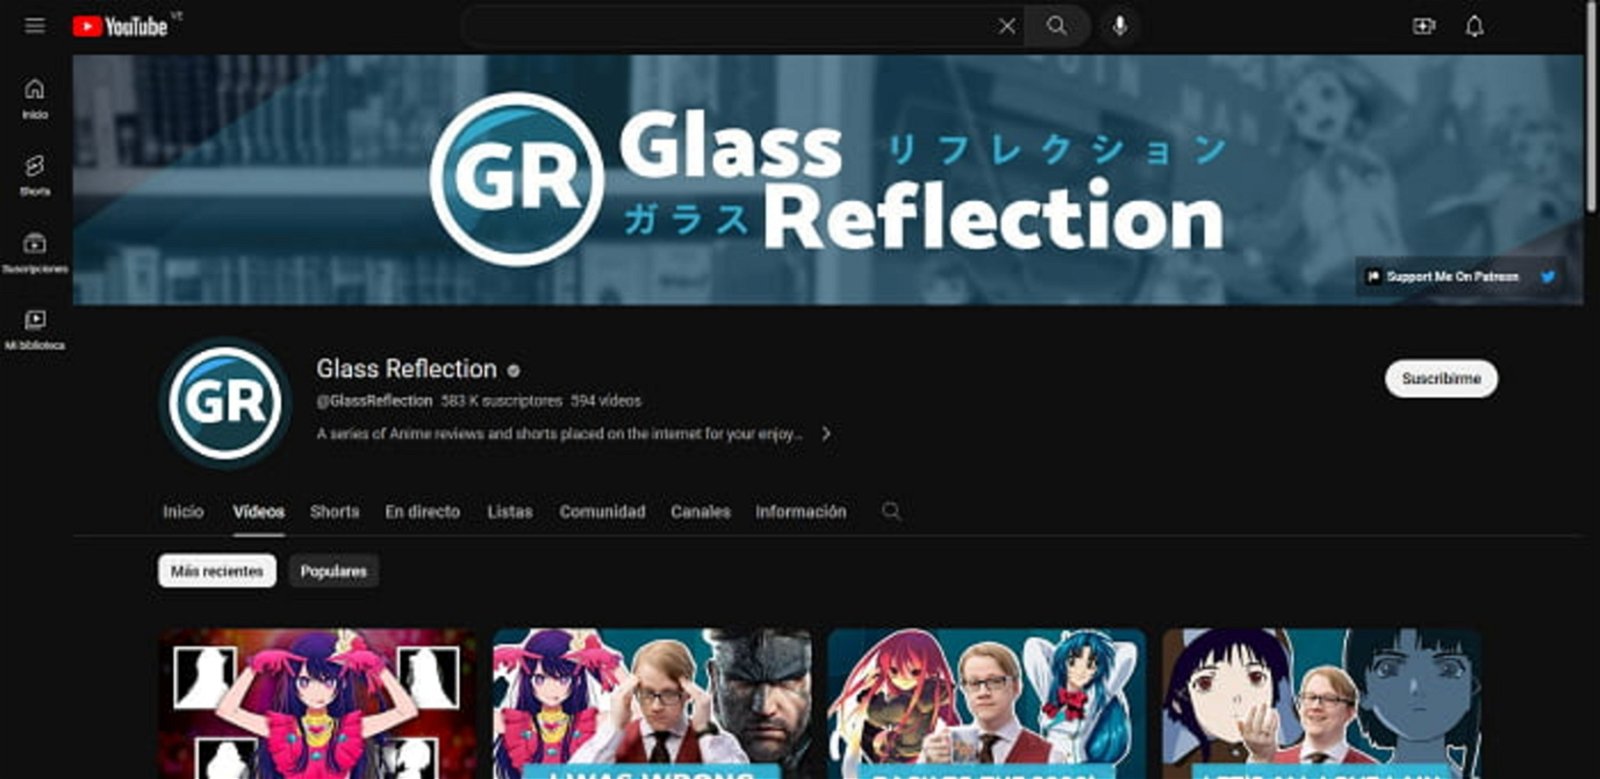 Otro de los canales de Youtube de anime más reconocidos es Glass Reflection